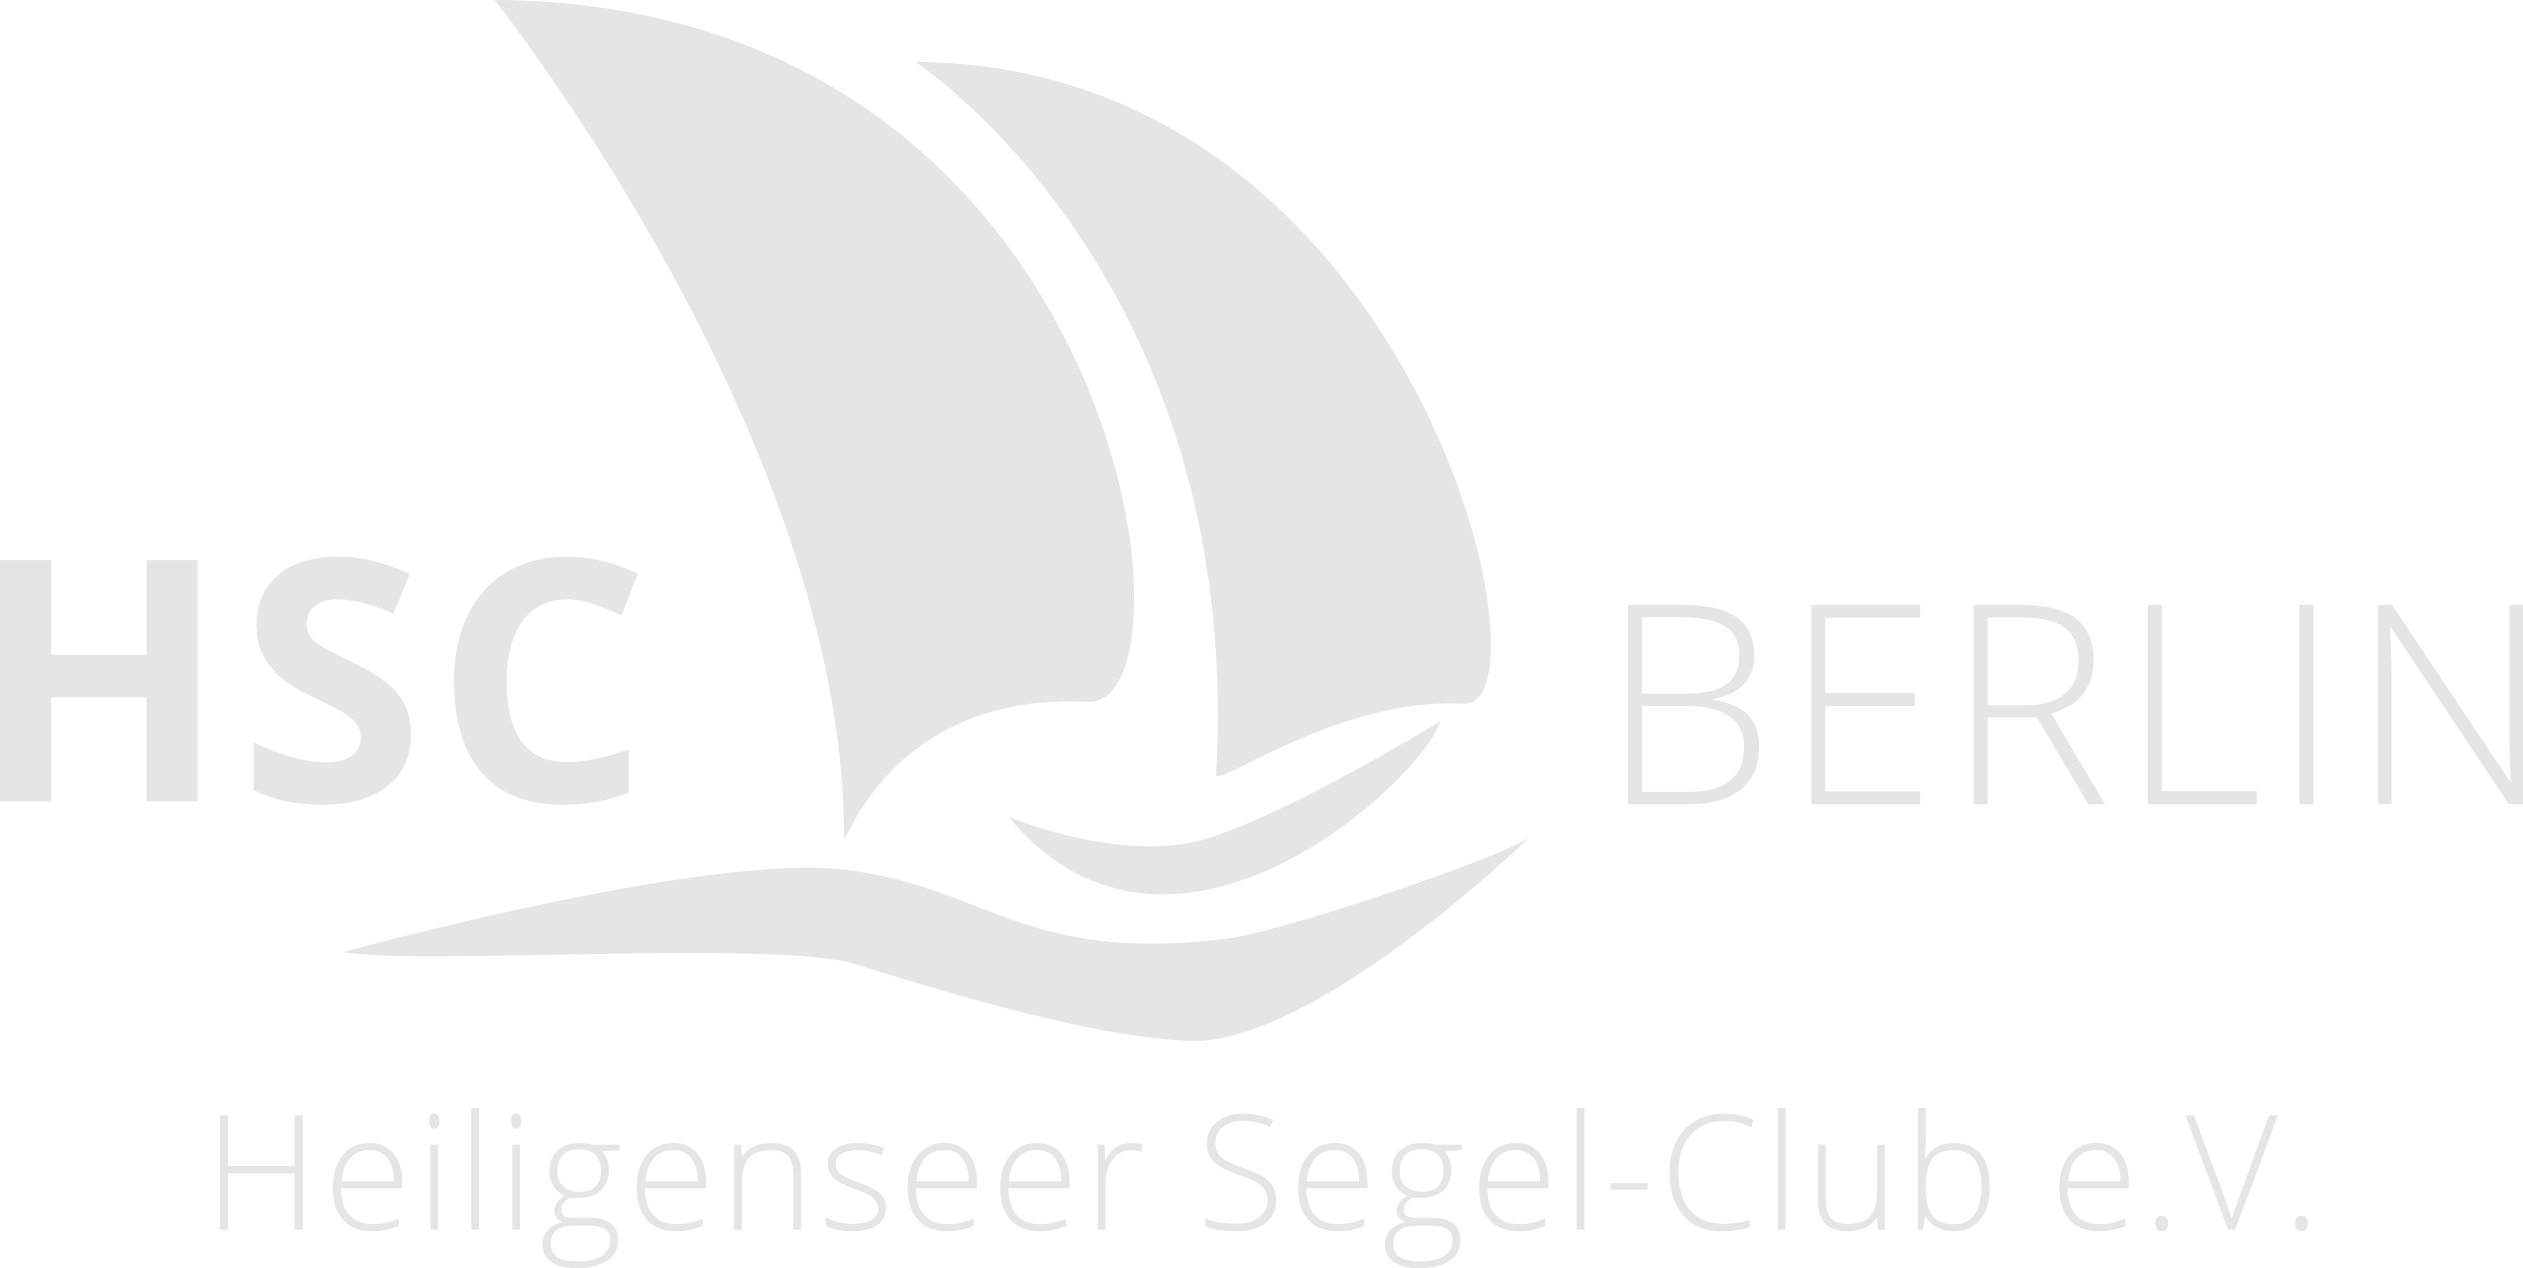 Heiligenseer Segel-Club e.V.